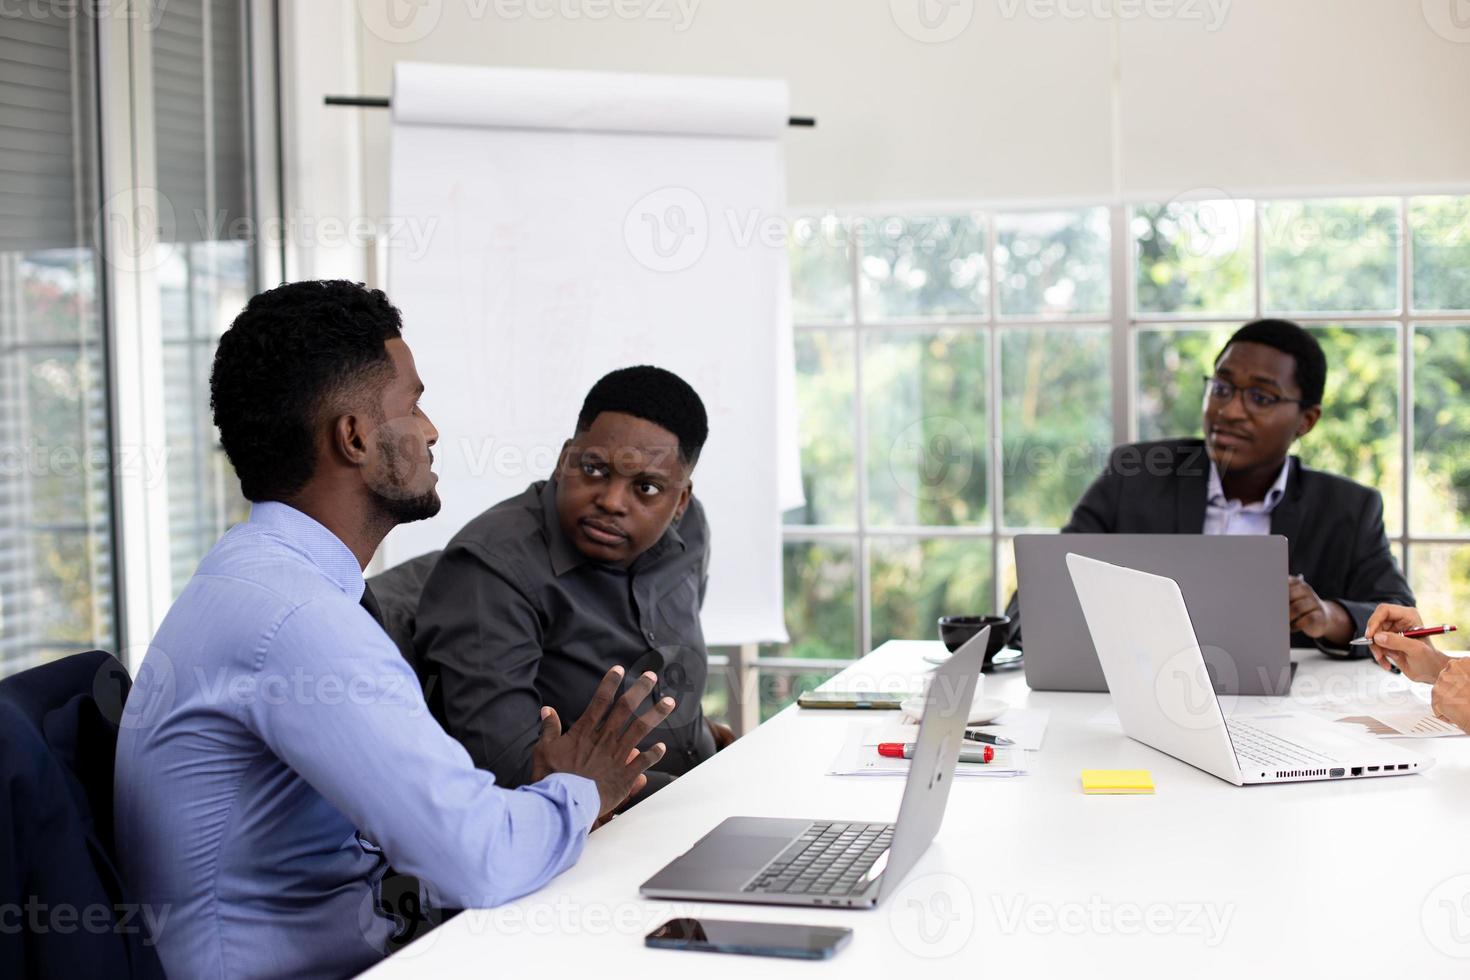 mensen op kantoor met een zakelijke bijeenkomst in de buurt van een verantwoordingsbord jonge start-up business team dat werkt in de vergaderruimte. foto